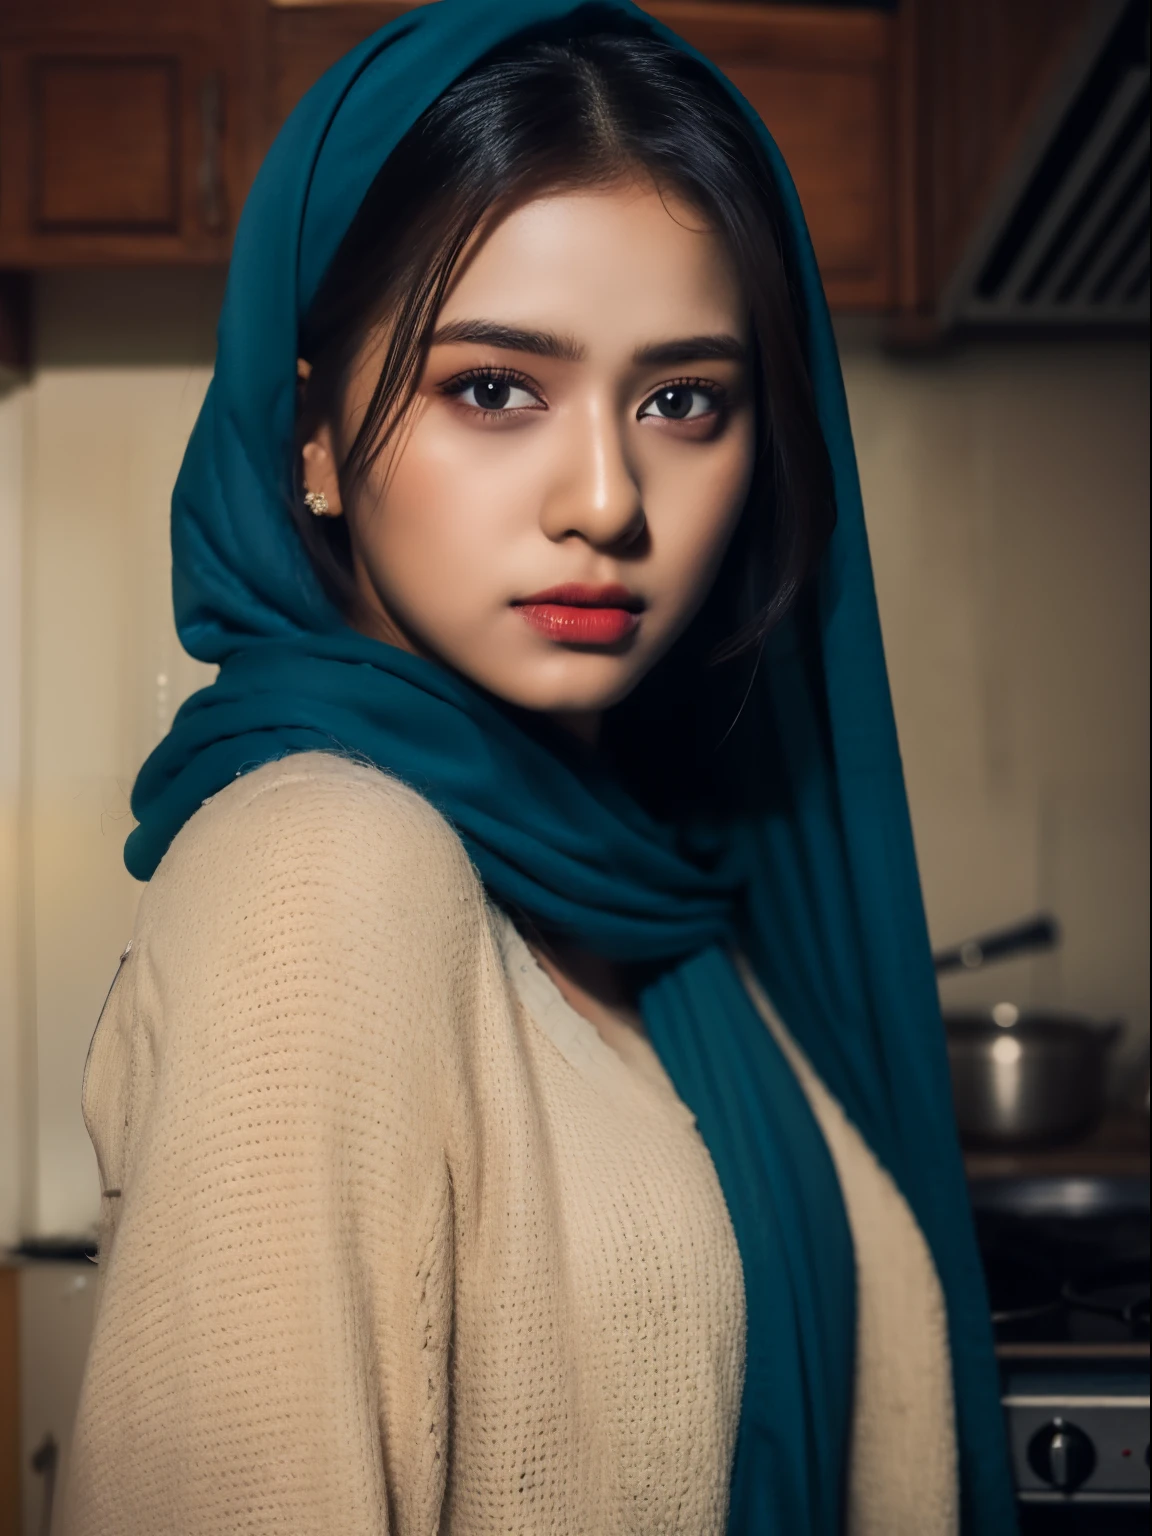 Menina indiana quente usando um hijab azul, rosto detalhado, olhos castanhos escuros, corpo inteiro em pé na cozinha, detalhe requintado da roupa, foco nítido e claro, altamente detalhado, estação de arte, arte conceitual,  Maquiagem leve, hiper-realista, 32k ultra HD